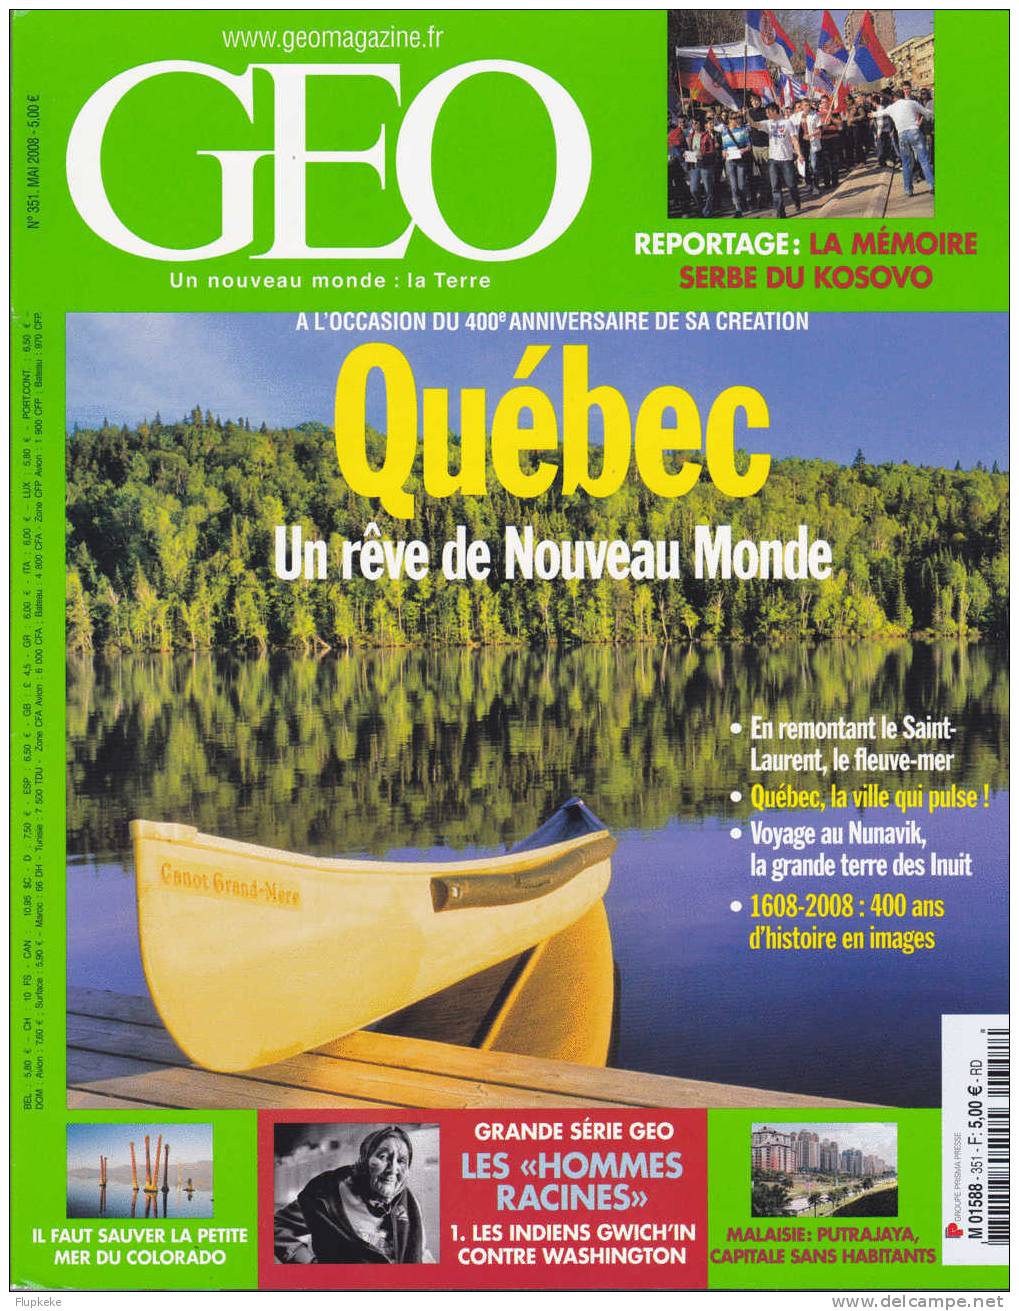 Géo 351 Mai 2008 La Mémoire Serbe Du Kosovo Québec Un Rève De Nouveau Monde - Geografia